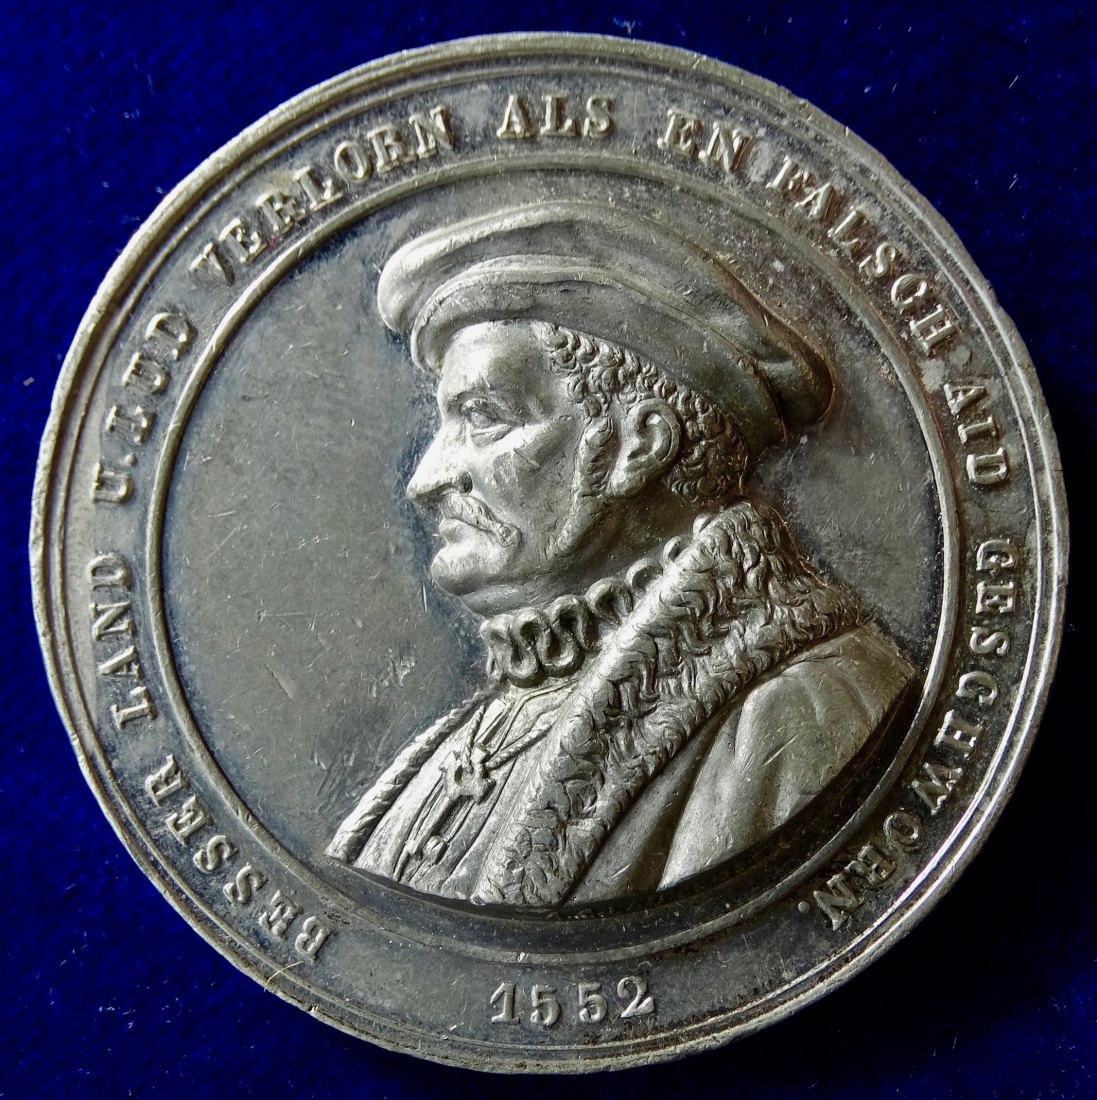  Hessen - Kassel, Medaille 1862 o.J. auf die Wiederherstellung der Verfassung von 1831.   